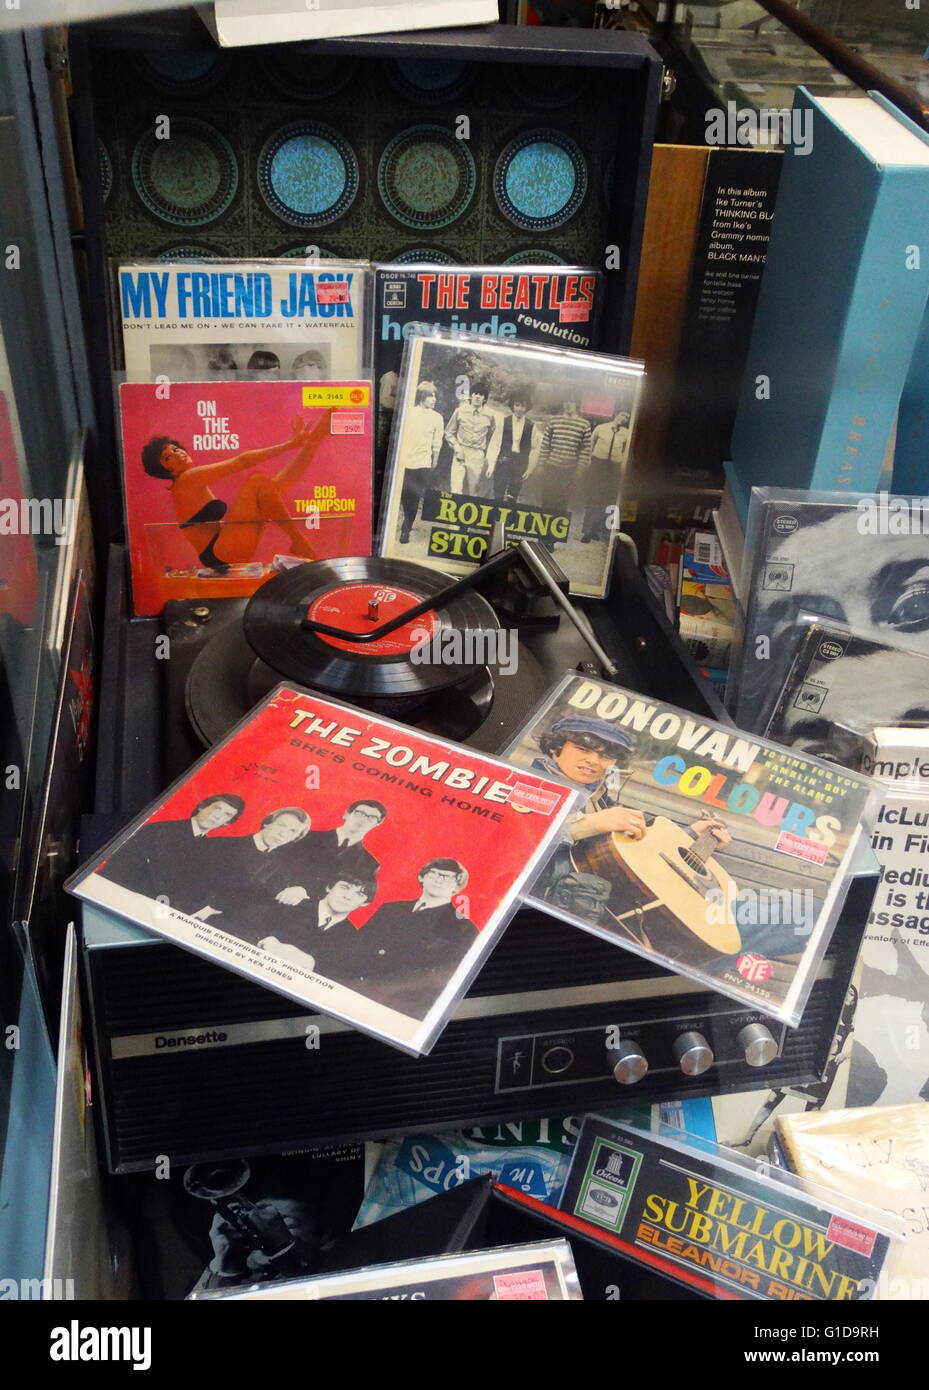 Dansette Plattenspieler ca. 1968 mit Vinyl-Schallplatten in den Ärmeln aus den sechziger Jahren pop Musik Ohr; Beatles; Donovan und Rolling Stones Records können gesehen werden Stockfoto